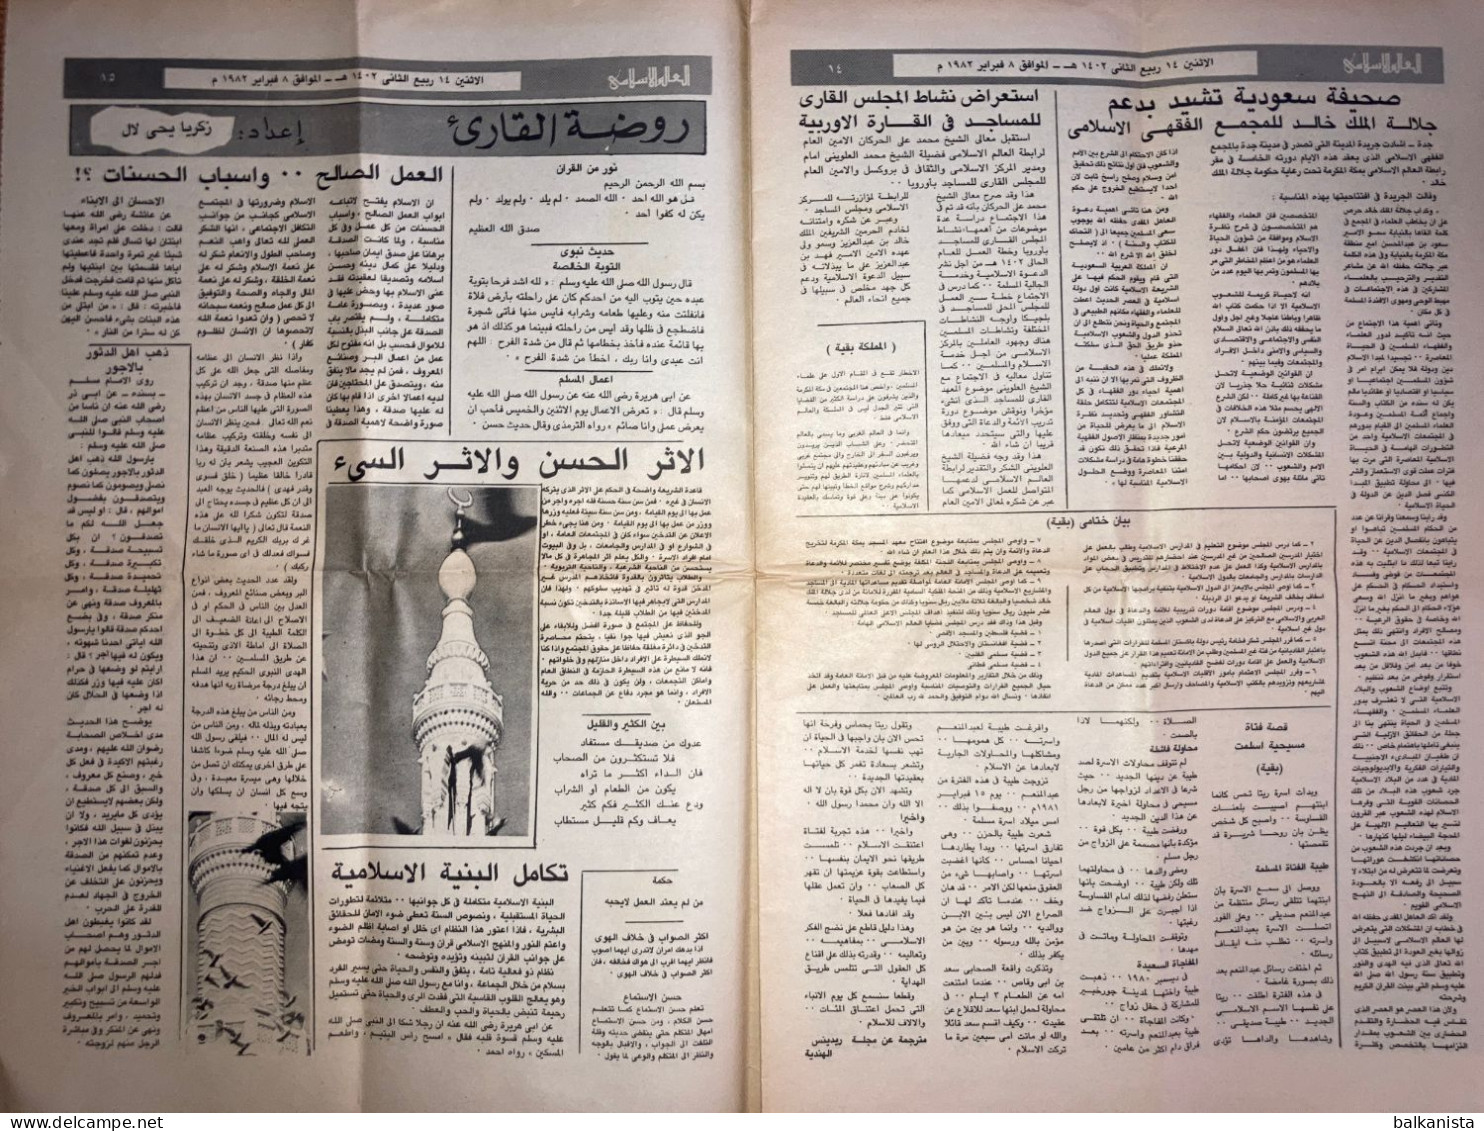 Saudi Arabia Akhbar al-Alam al-Islami Newspaper 8 February 1982